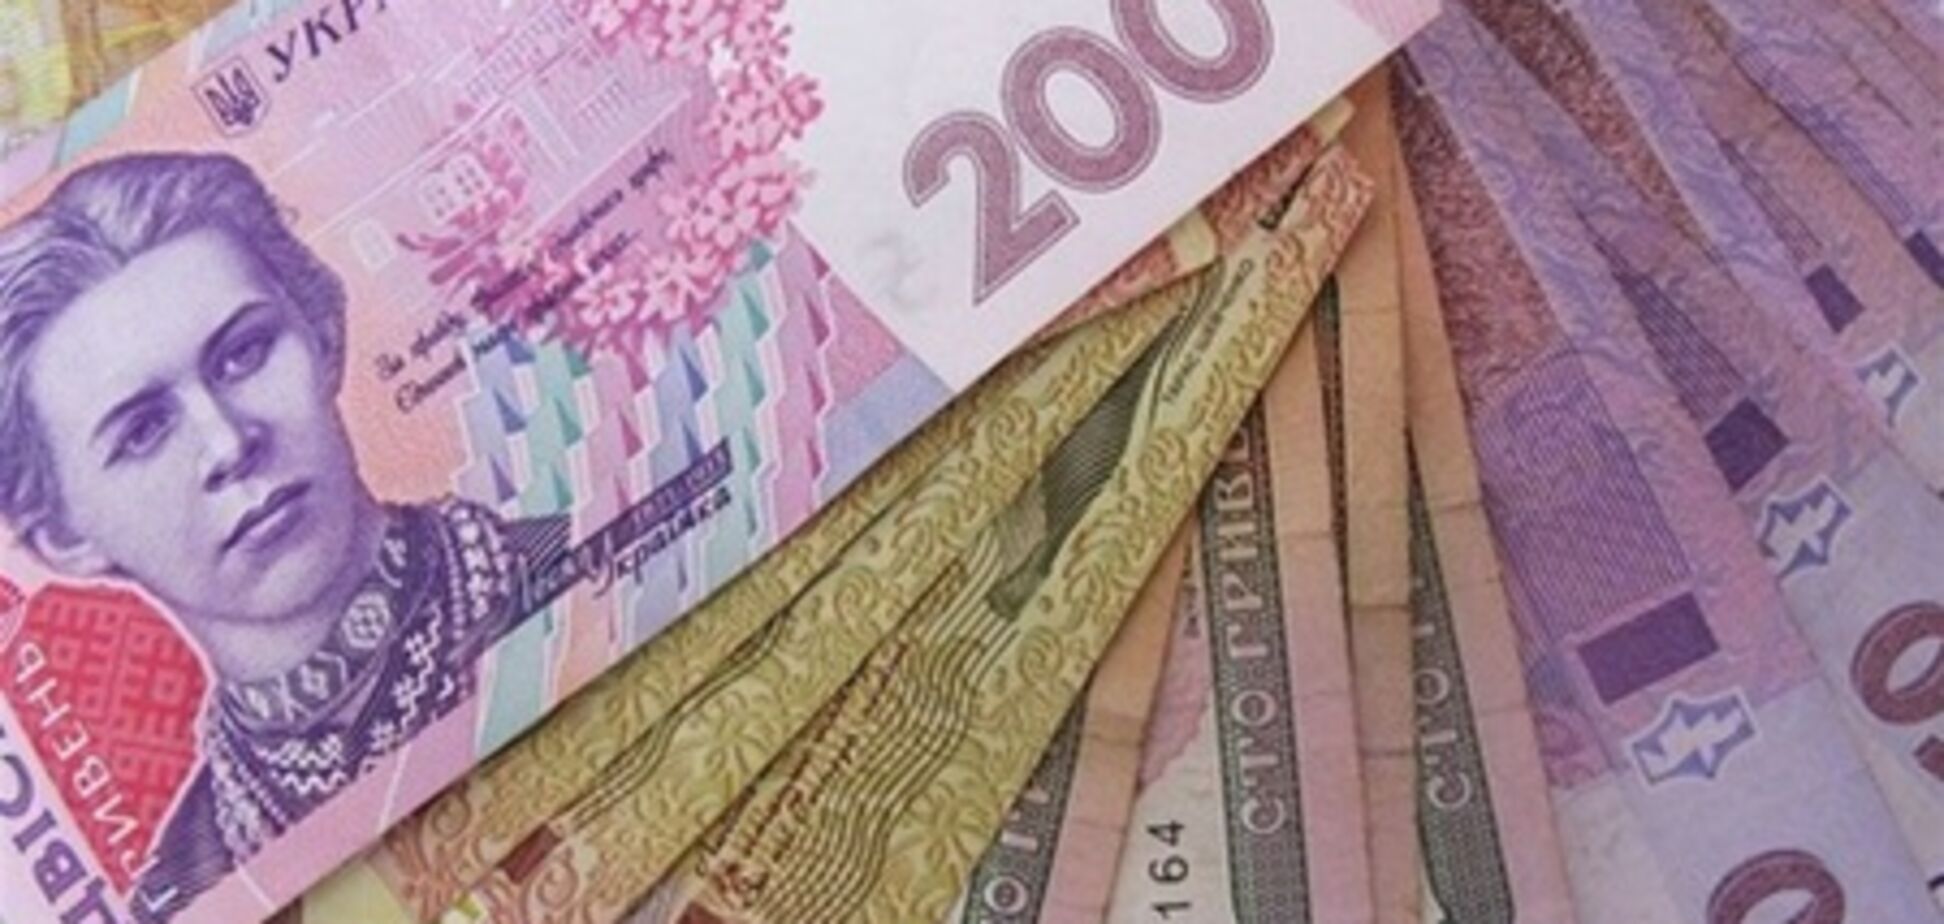 Вкладчикам кредитных союзов «Слобода-кредит» и «Надежда+» могут вернуть 17 млн грн